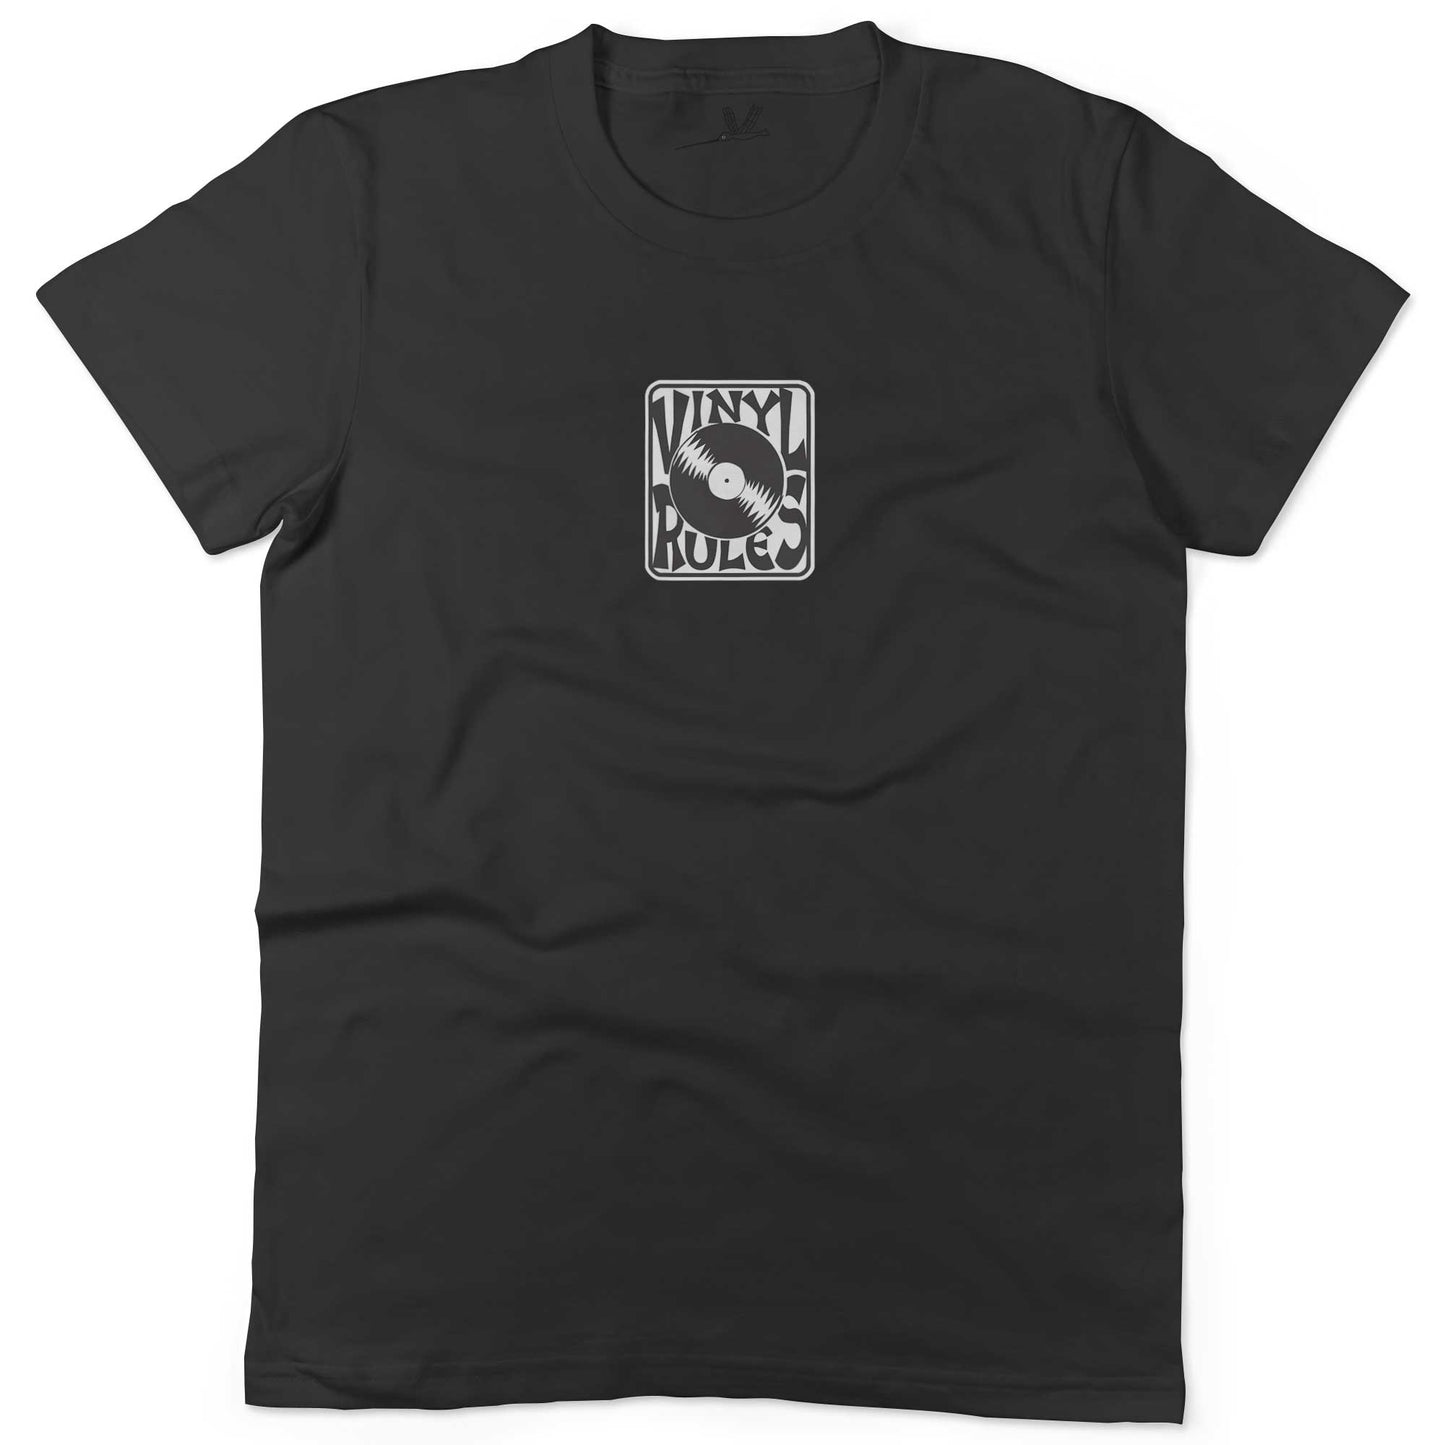 Vinyl Rules Unisex Or Women's Cotton T-shirt-Black-Woman